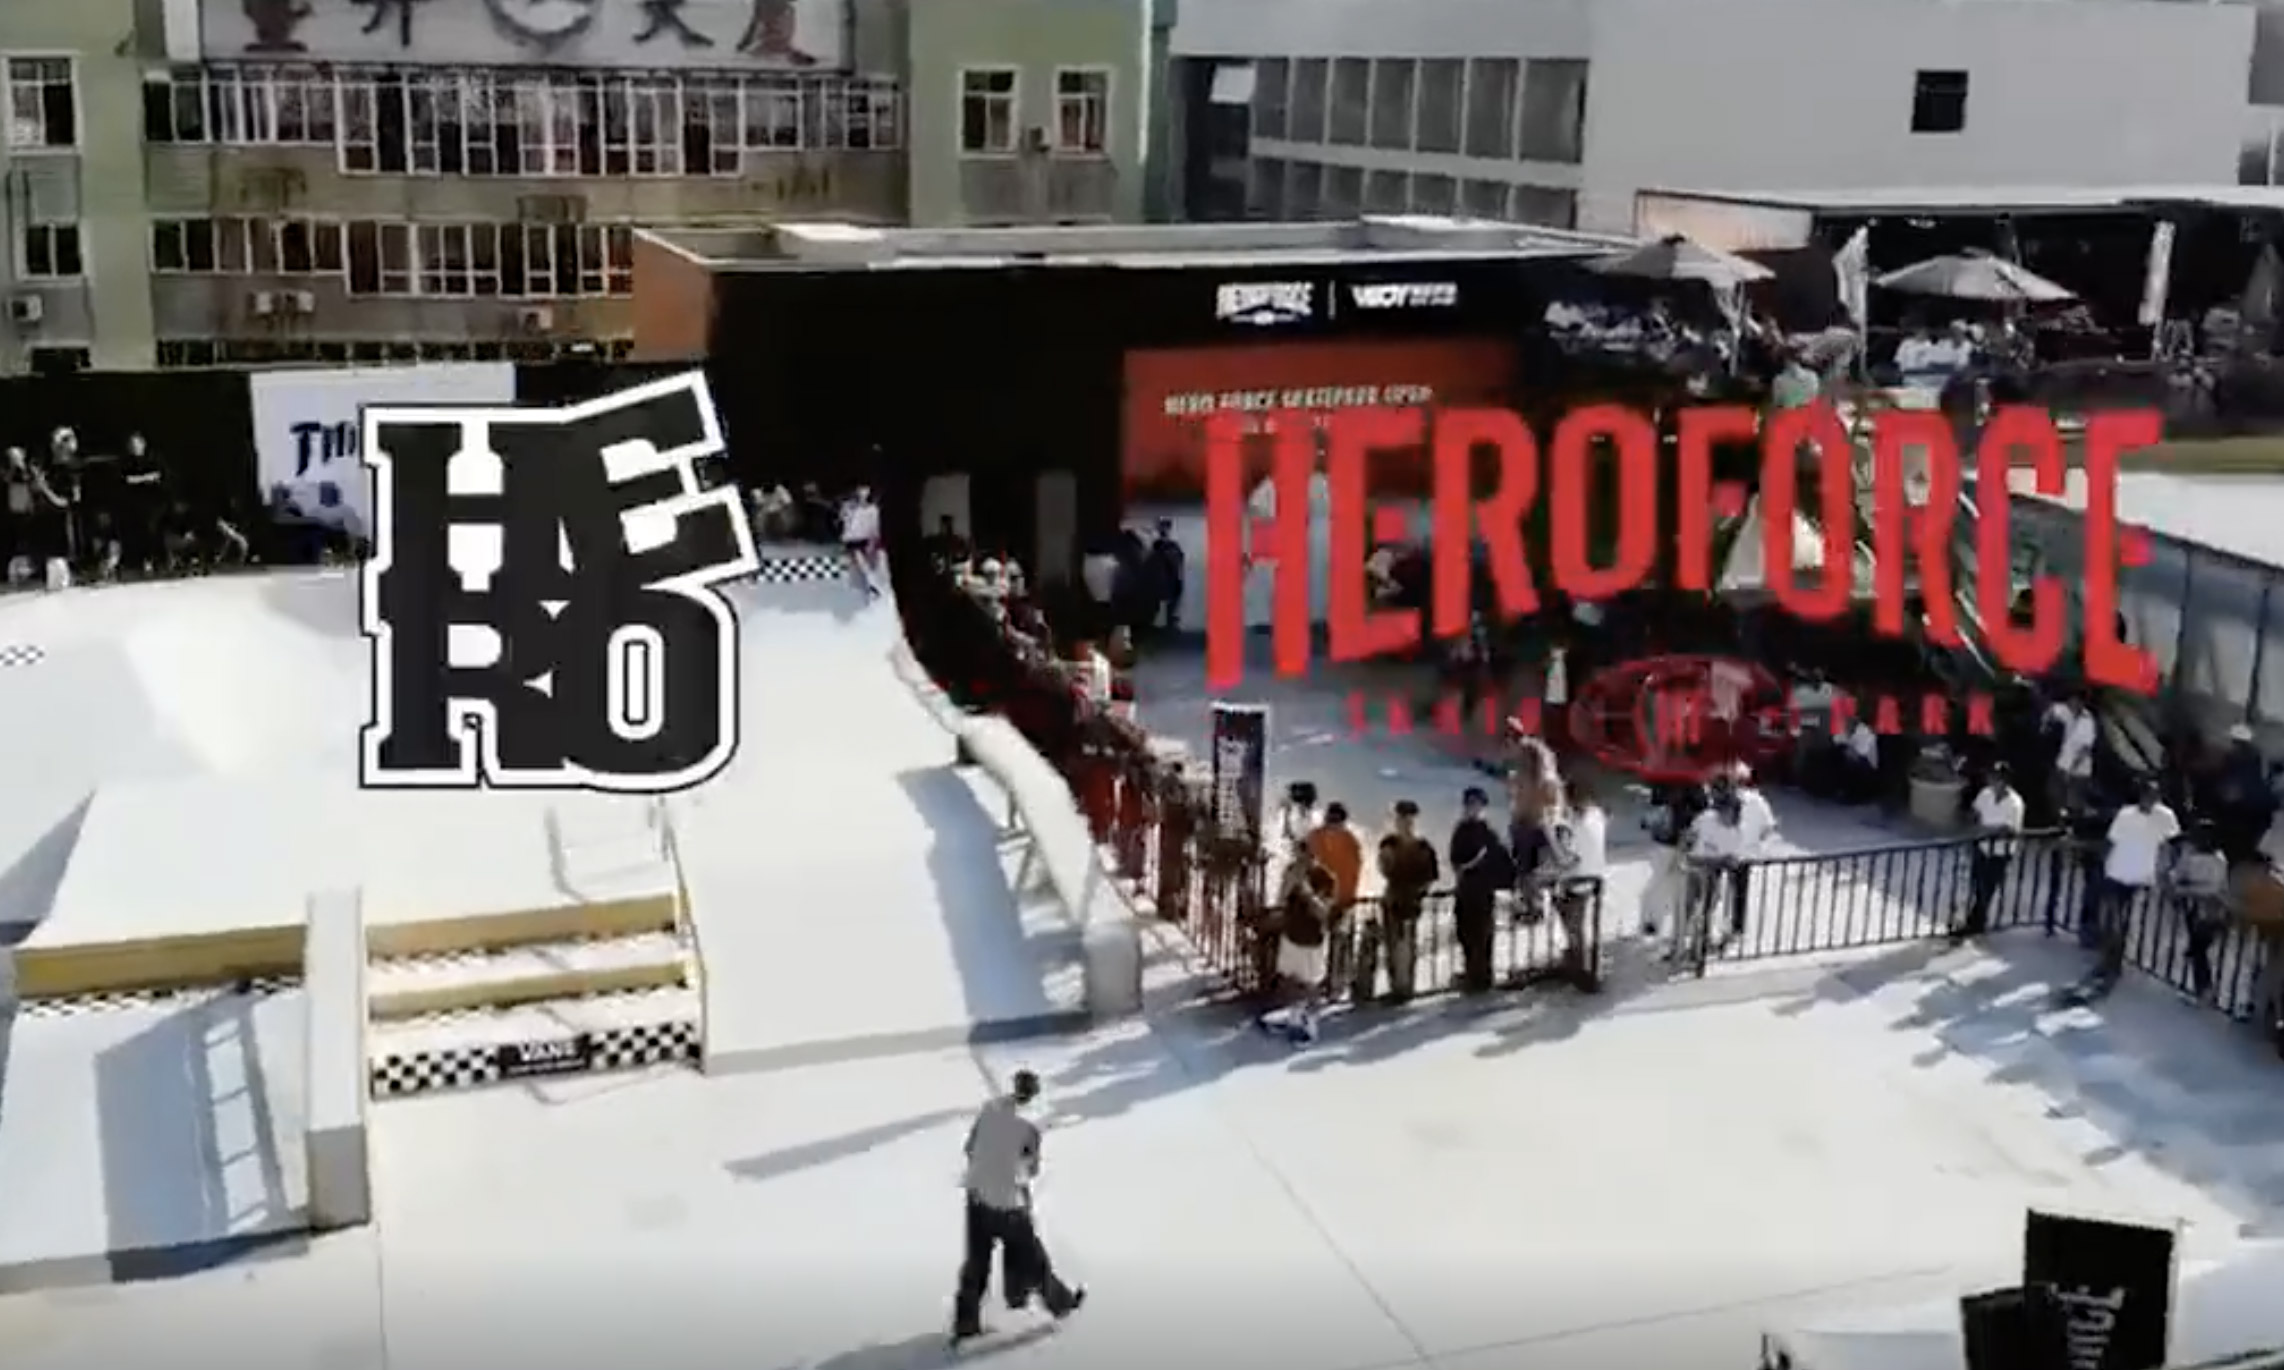 HERO FORCE SKATEPARK 开业派对暨 VBOY 滑板学校开幕活动圆满结束